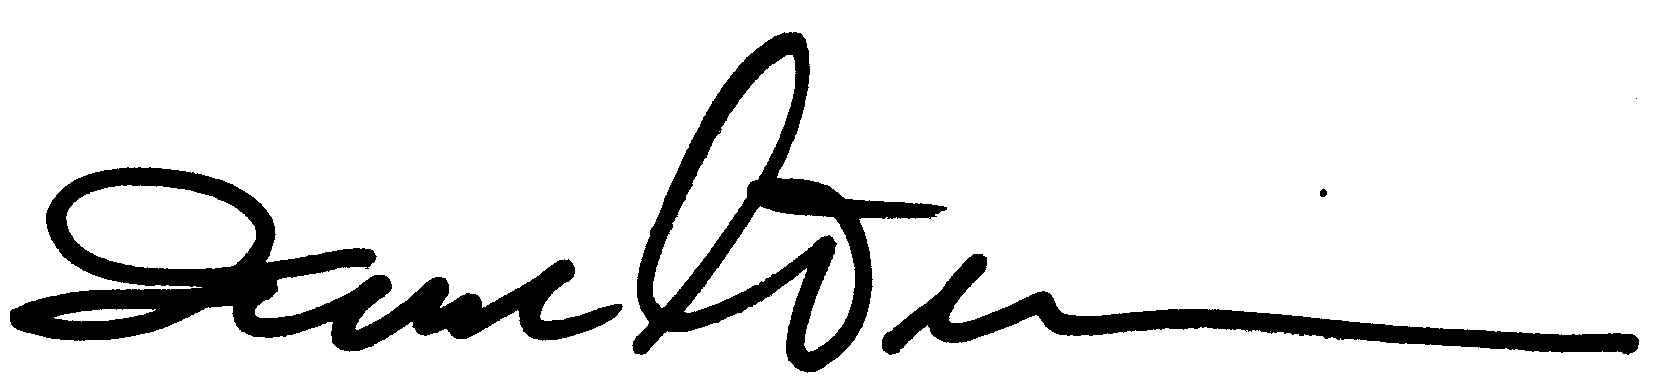 Irwin Winkler autograph facsimile